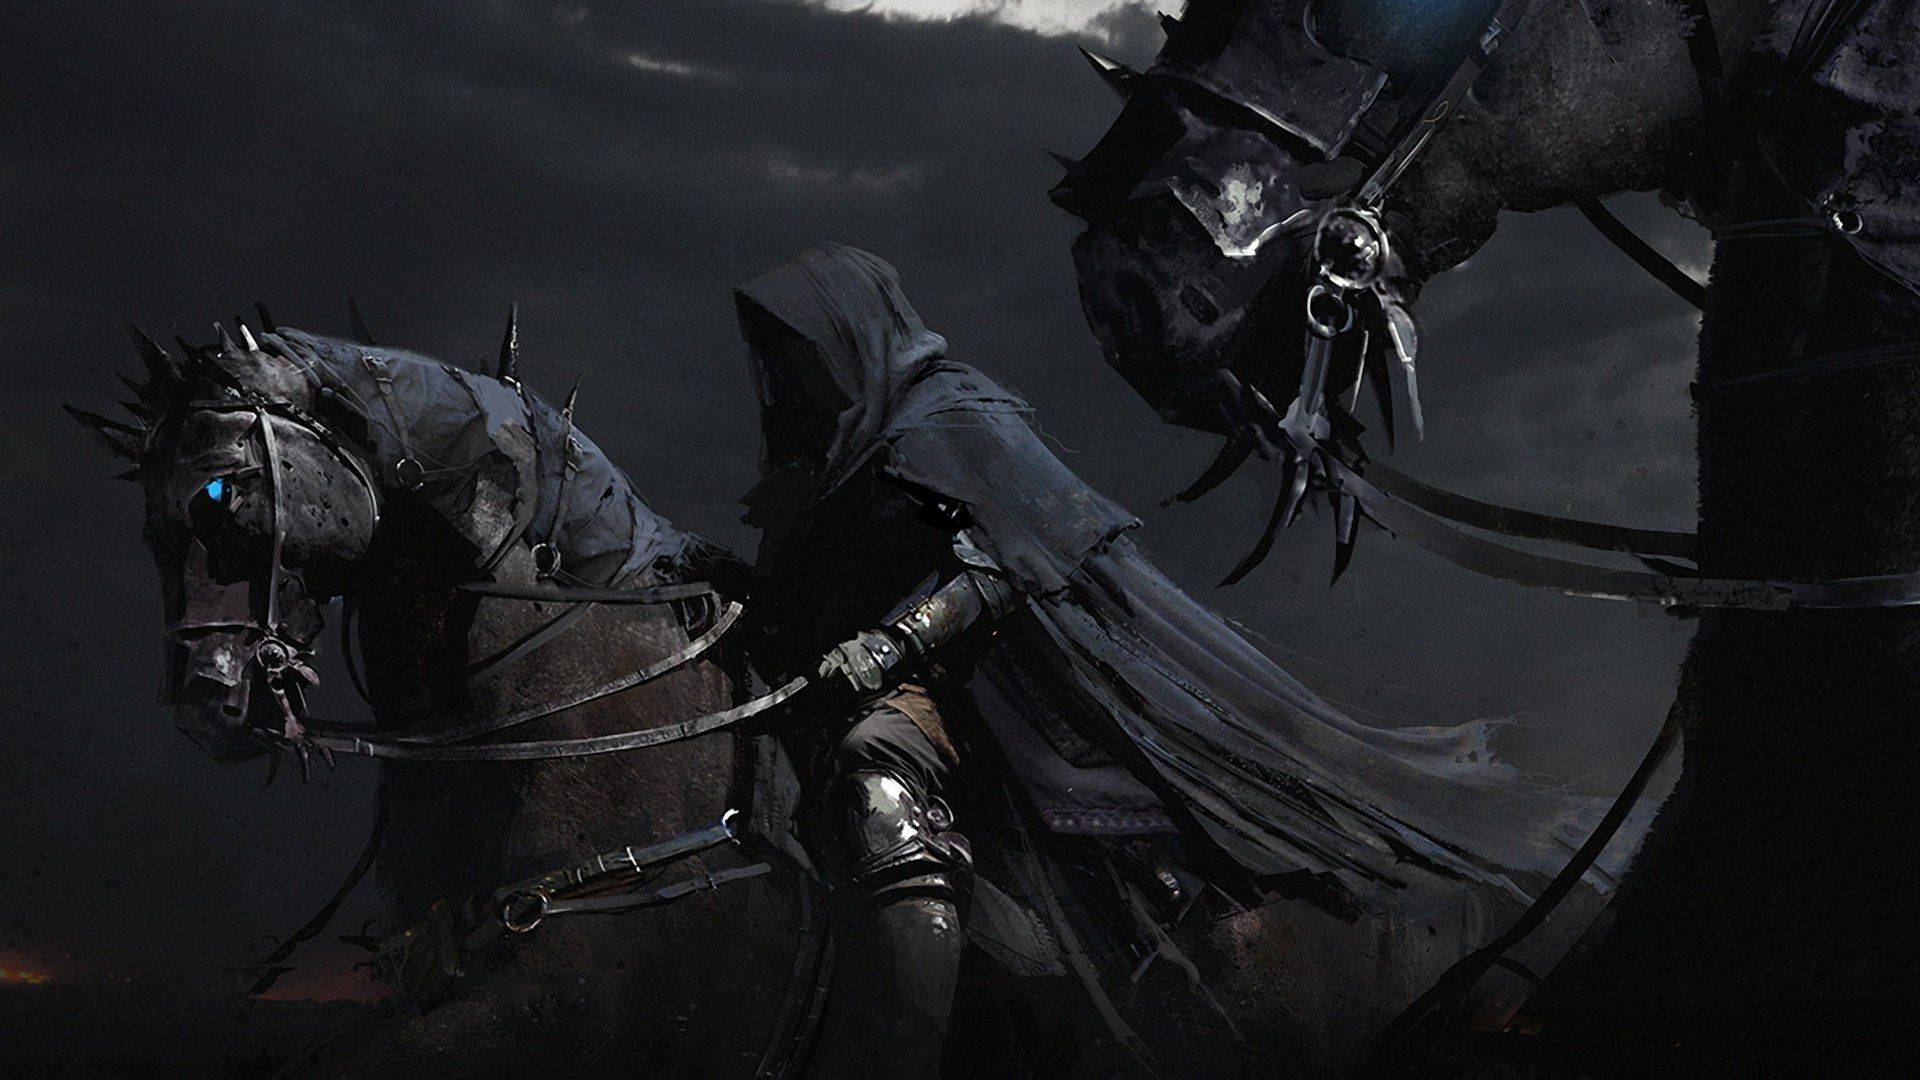 Dark Knight Rider Background